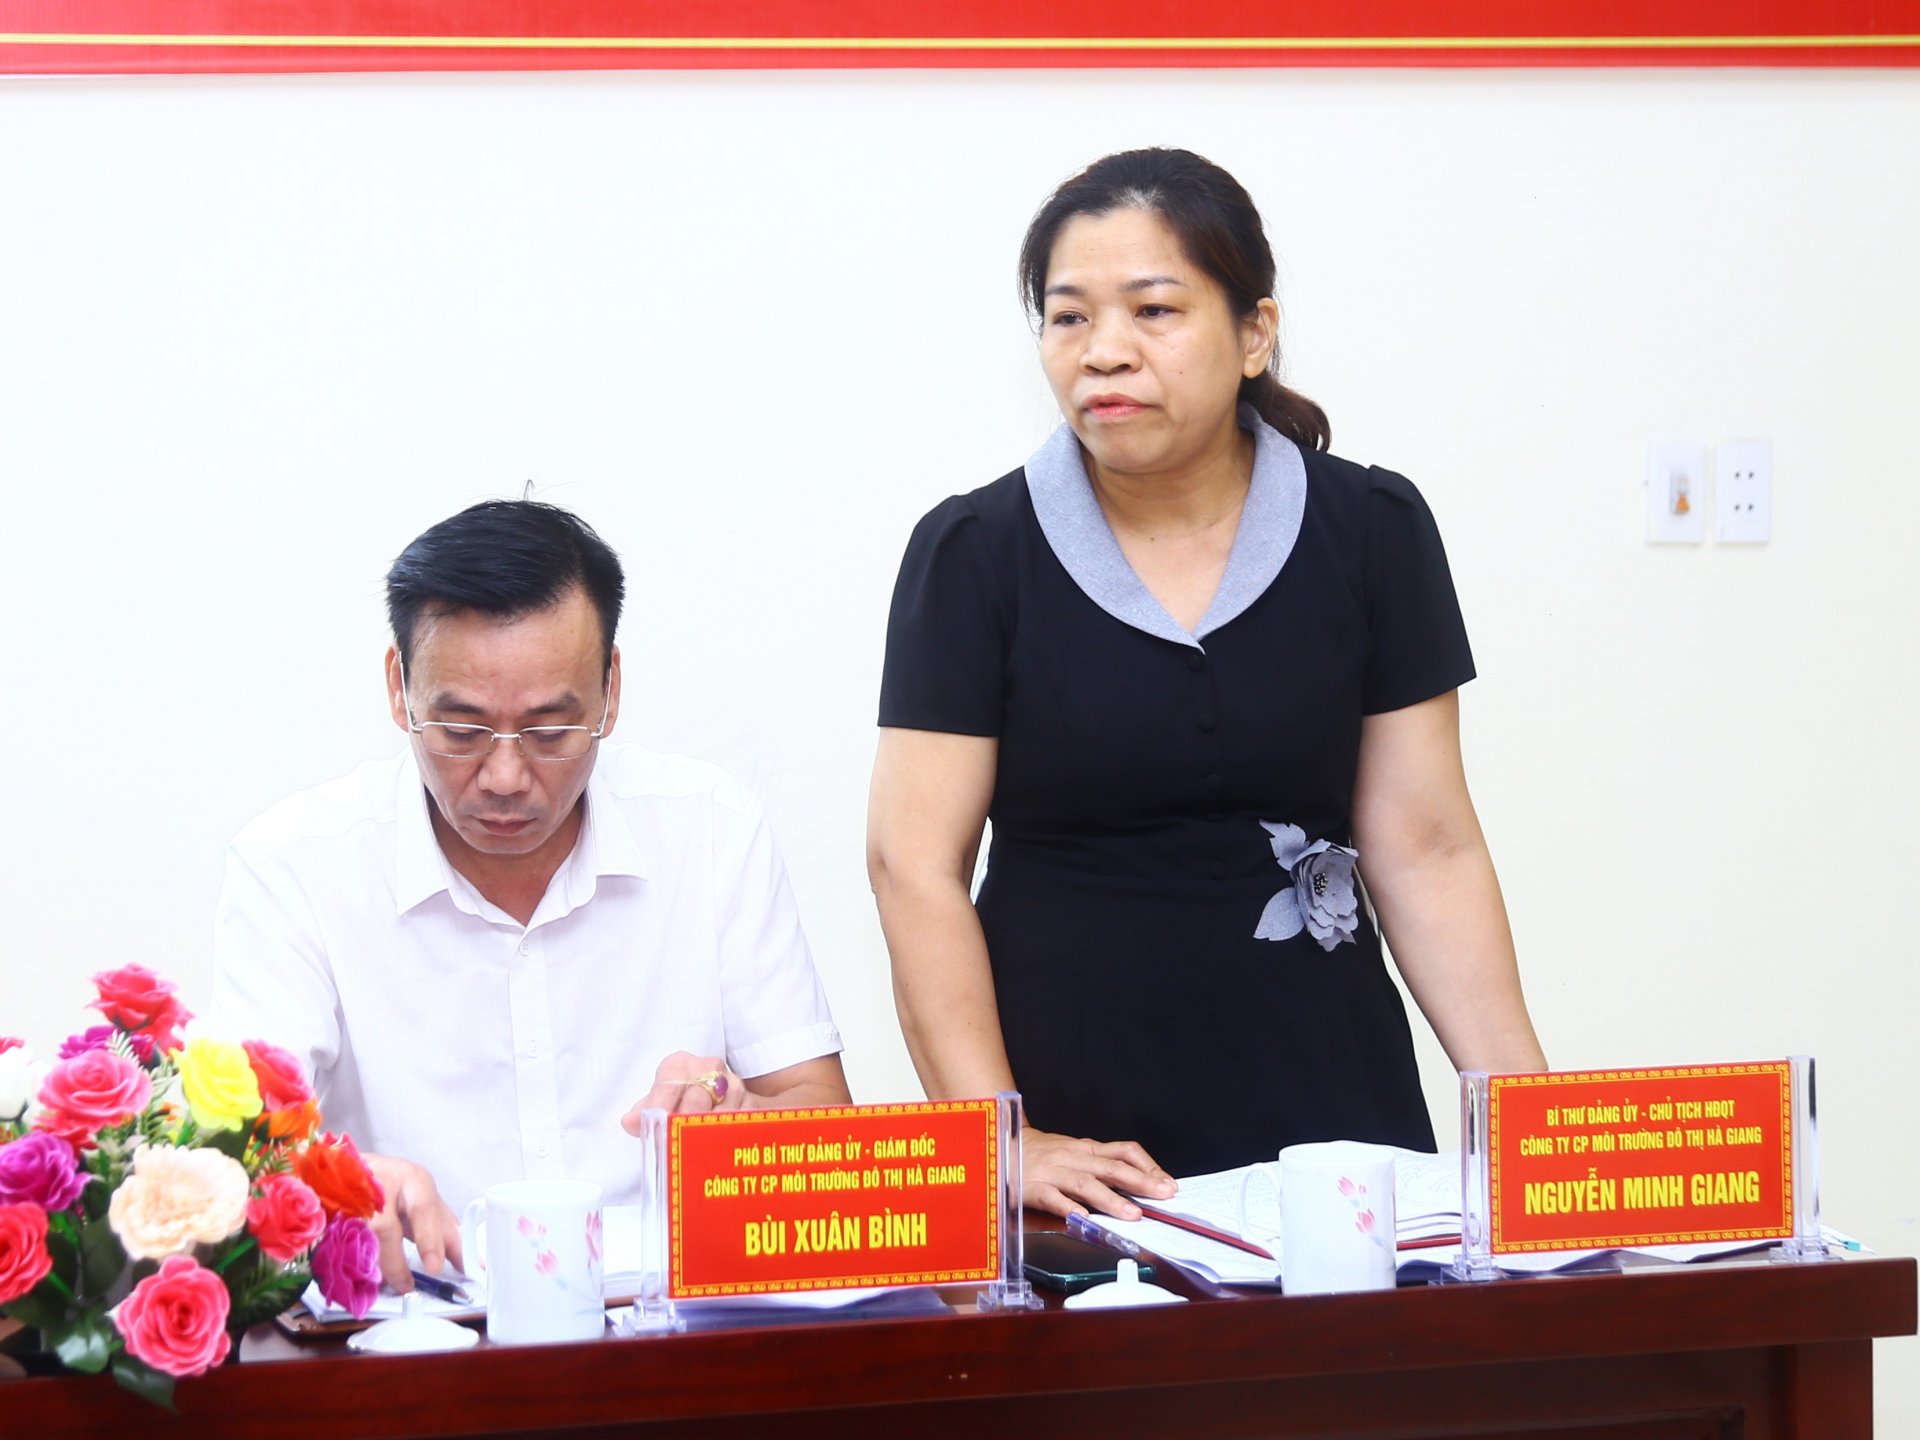 Đồng chí Nguyễn Minh Giang, Chủ tịch HĐQT Công ty Cổ phần Môi trường đô thị Hà Giang giải trình làm rõ việc thực hiện chế độ, chính sách người lao động với đoàn giám sát.